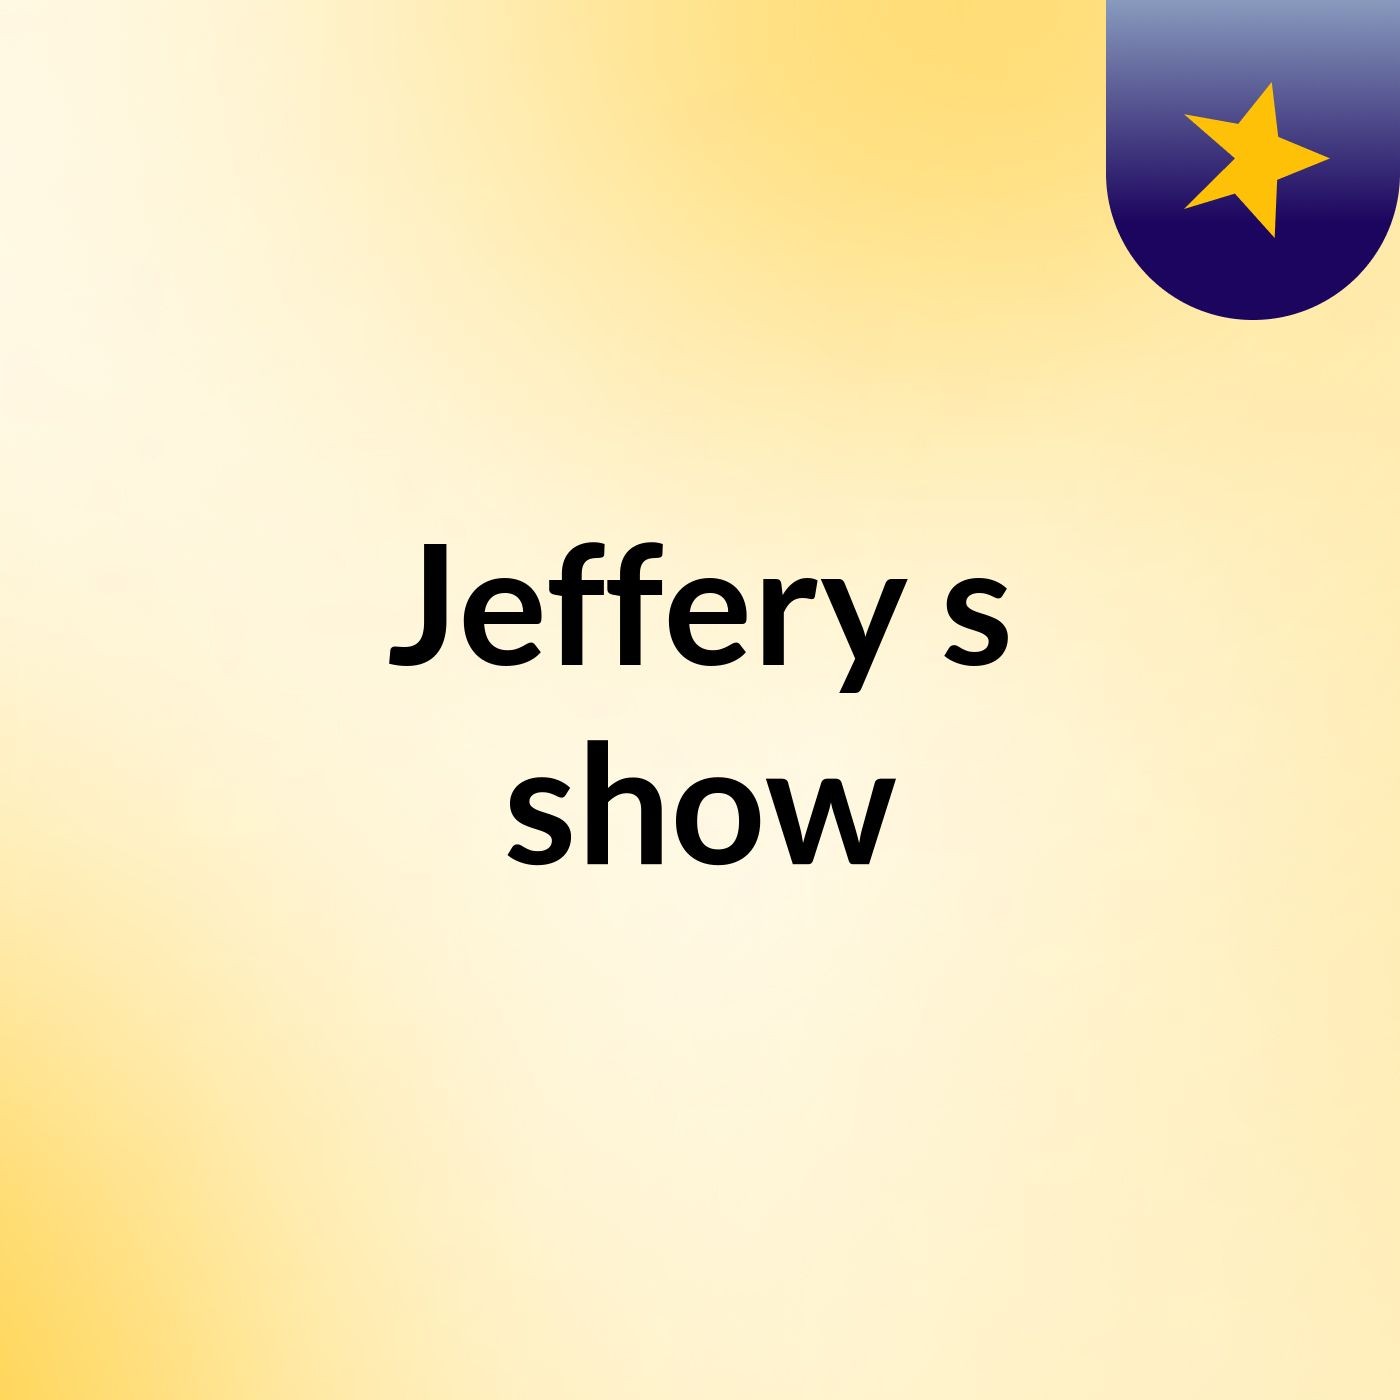 Jeffery's show